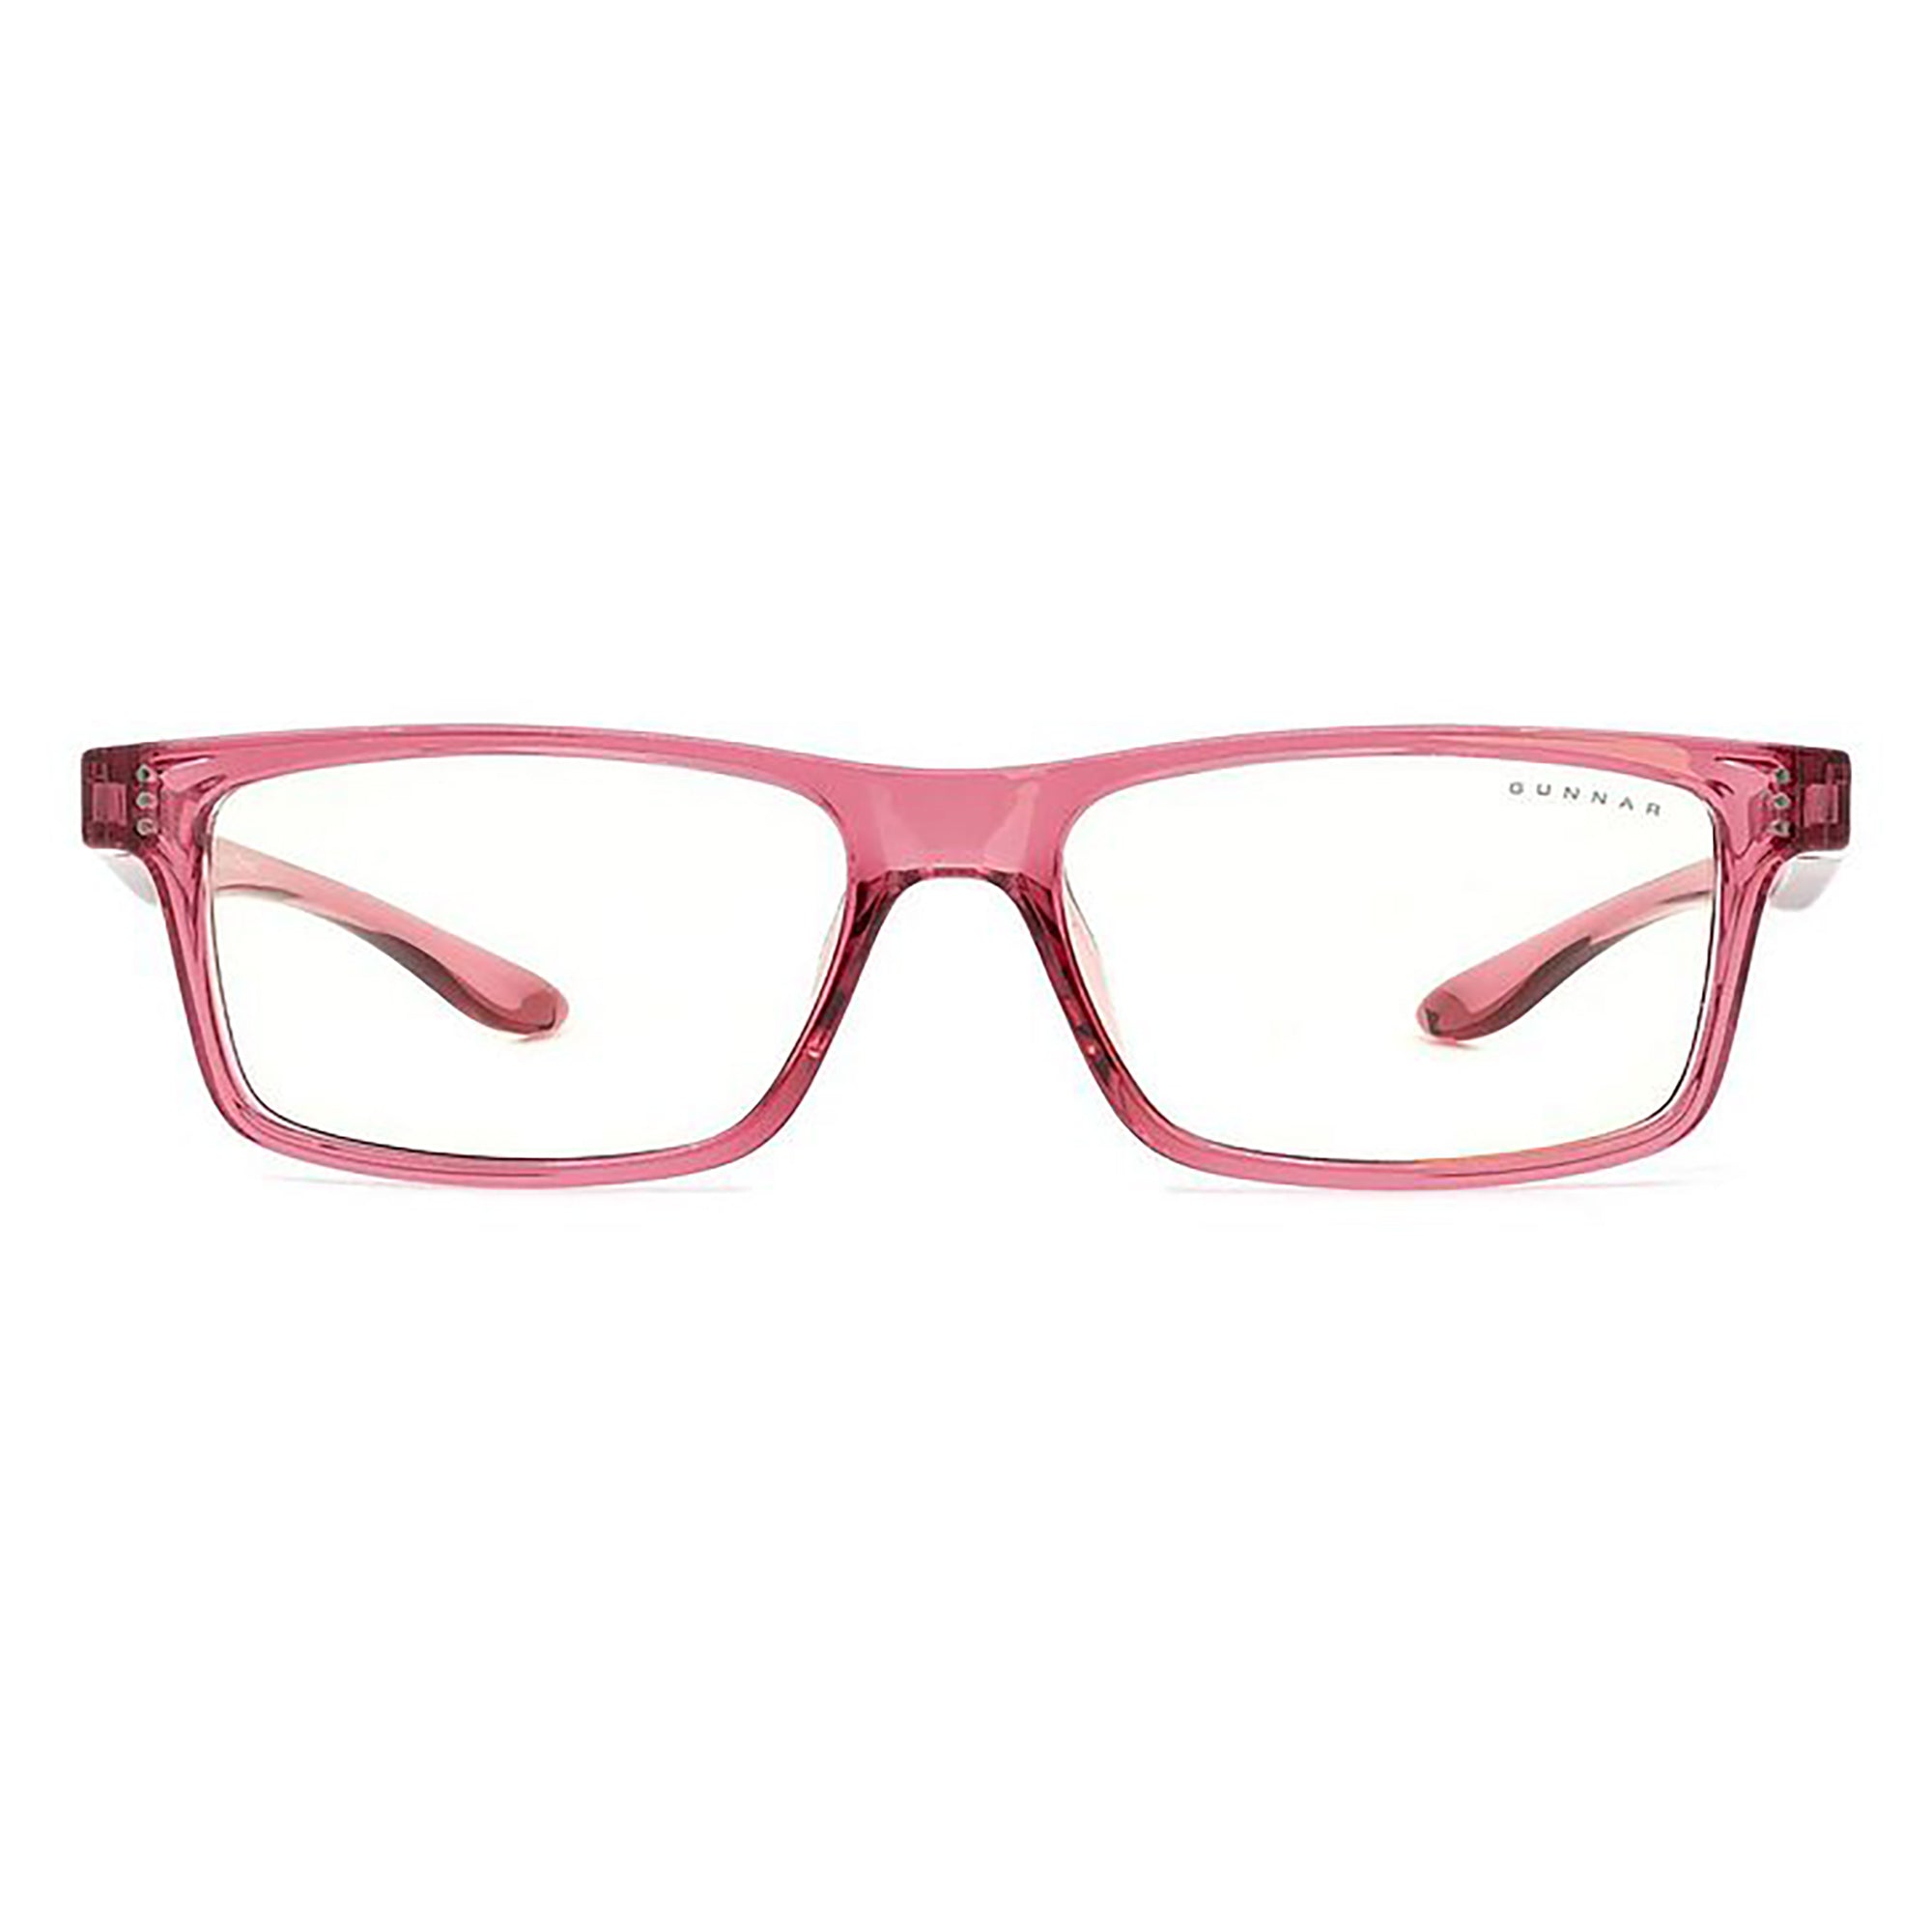 Gunnar Cruz Kids Indoor Digital Eyewear/Glasses, Pink (8-12 years)